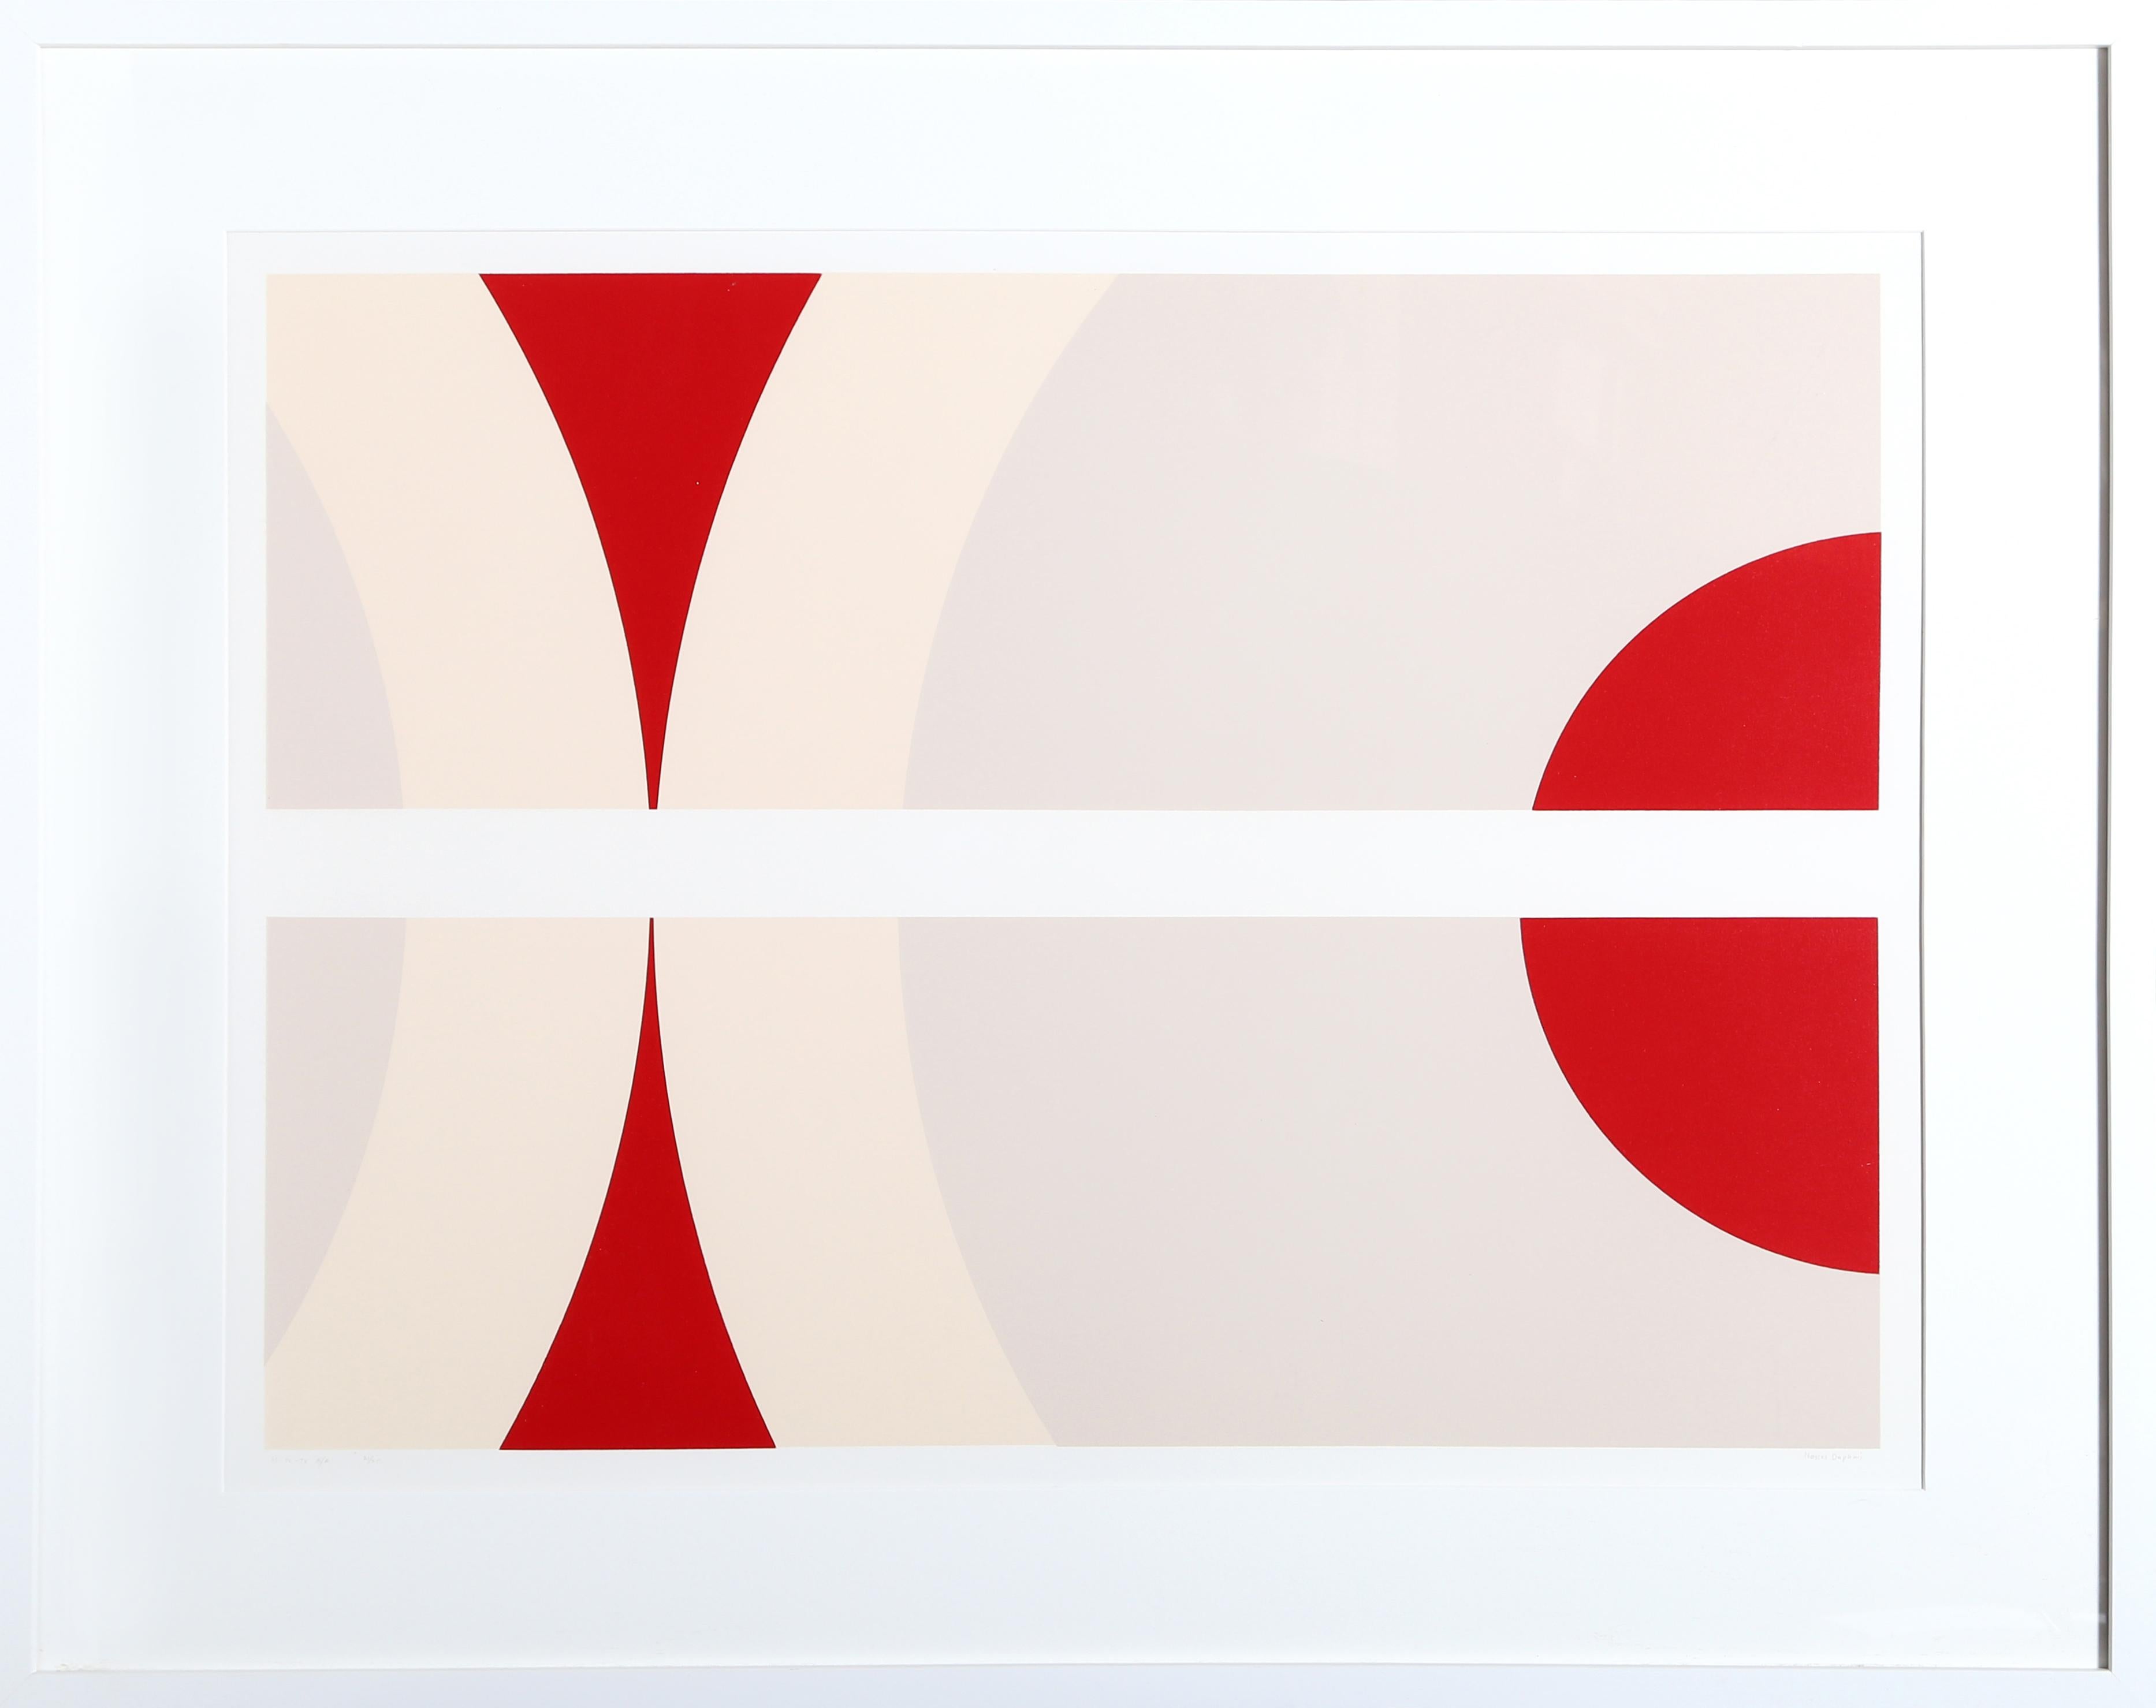 Künstler: Nassos Daphnis, Grieche (1914 - 2010)
Titel: SS 12-78
Jahr: 1978
Medium: Siebdruck, Signiert und nummeriert mit Bleistift
Auflage: 120, 25 AP
Bildgröße: 24 x 33 Zoll 
Größe: 32 in. x 40.5 in. (81,28 cm x 102,87 cm)